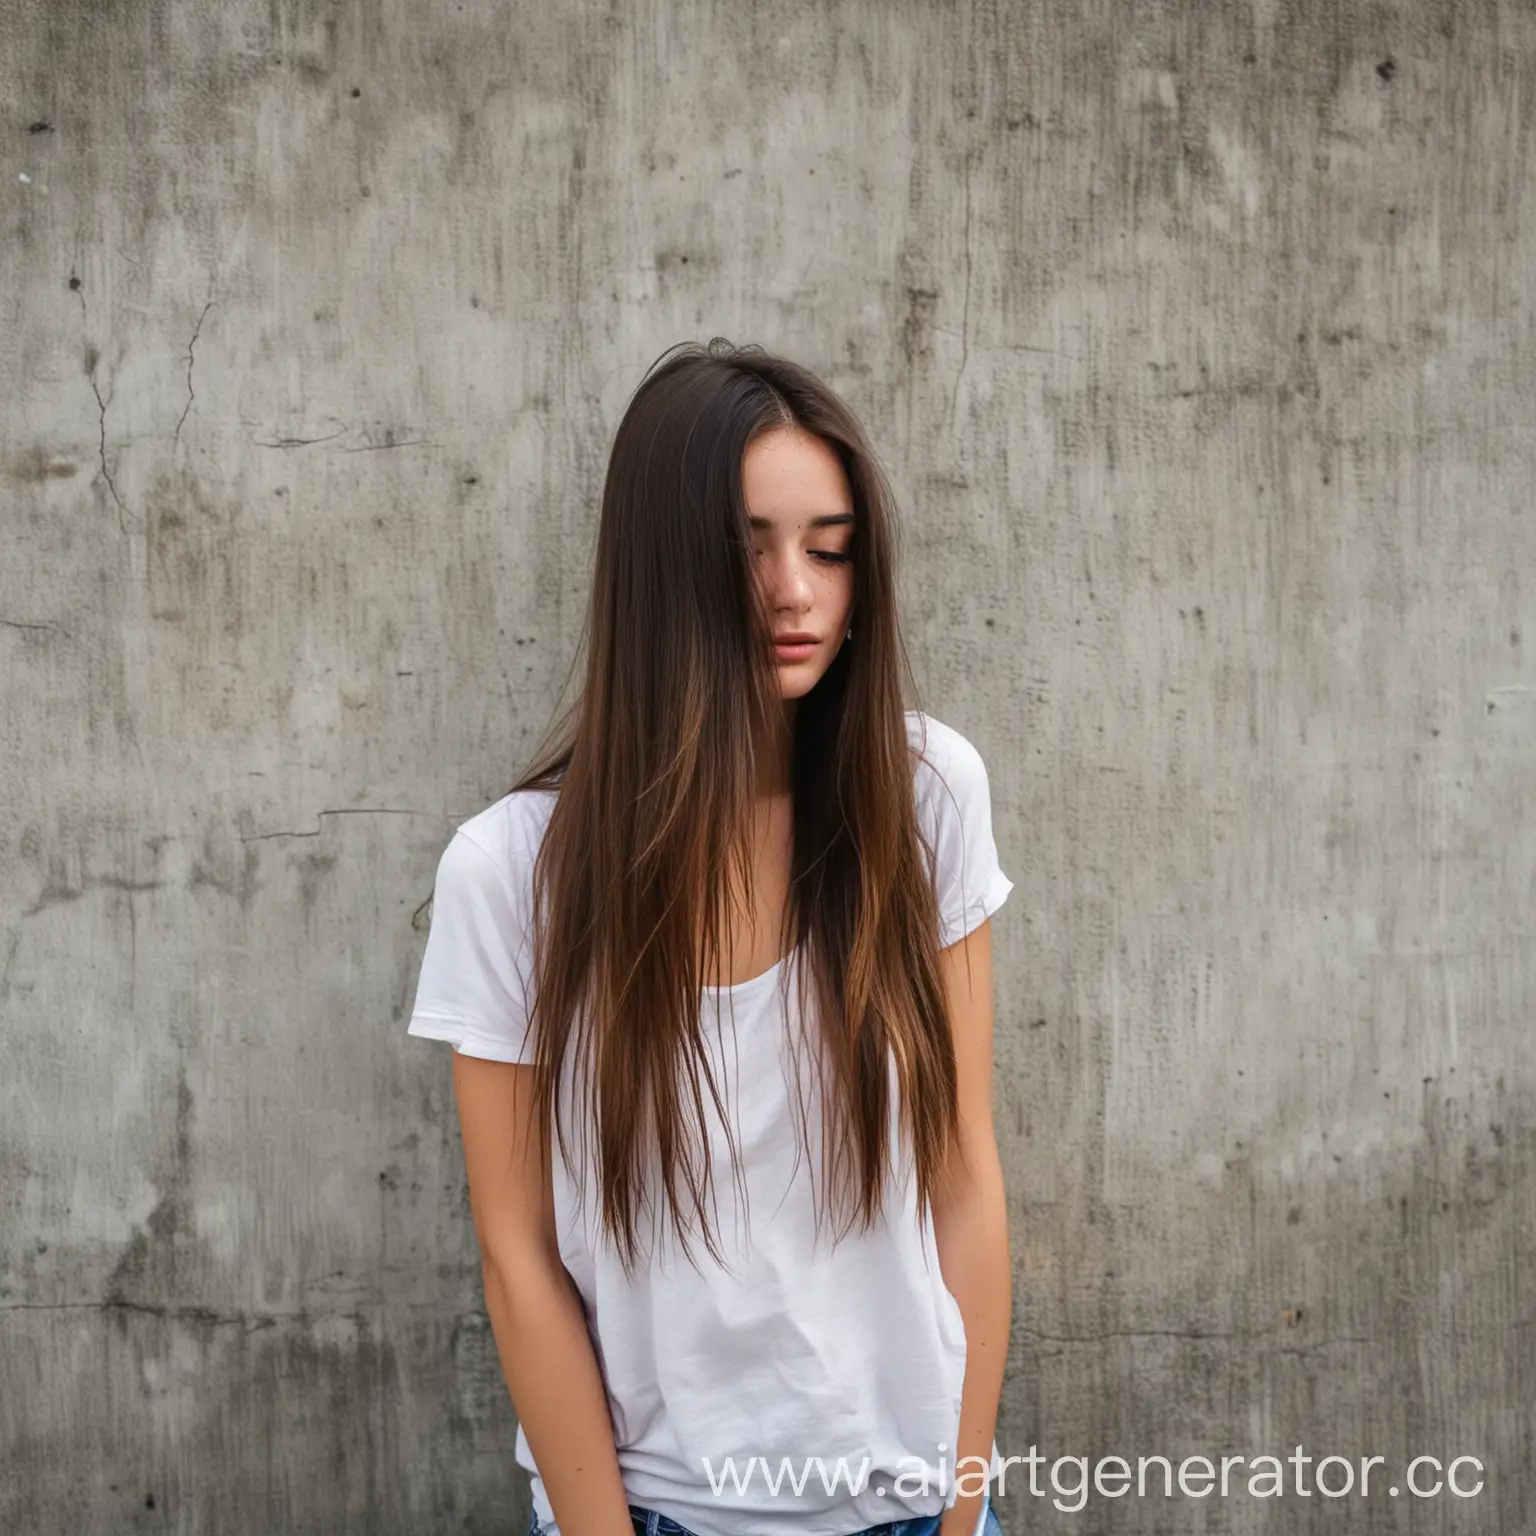 девушка с длинными волосами не видно лица лицо панамкой на фоне бетонной стены худая